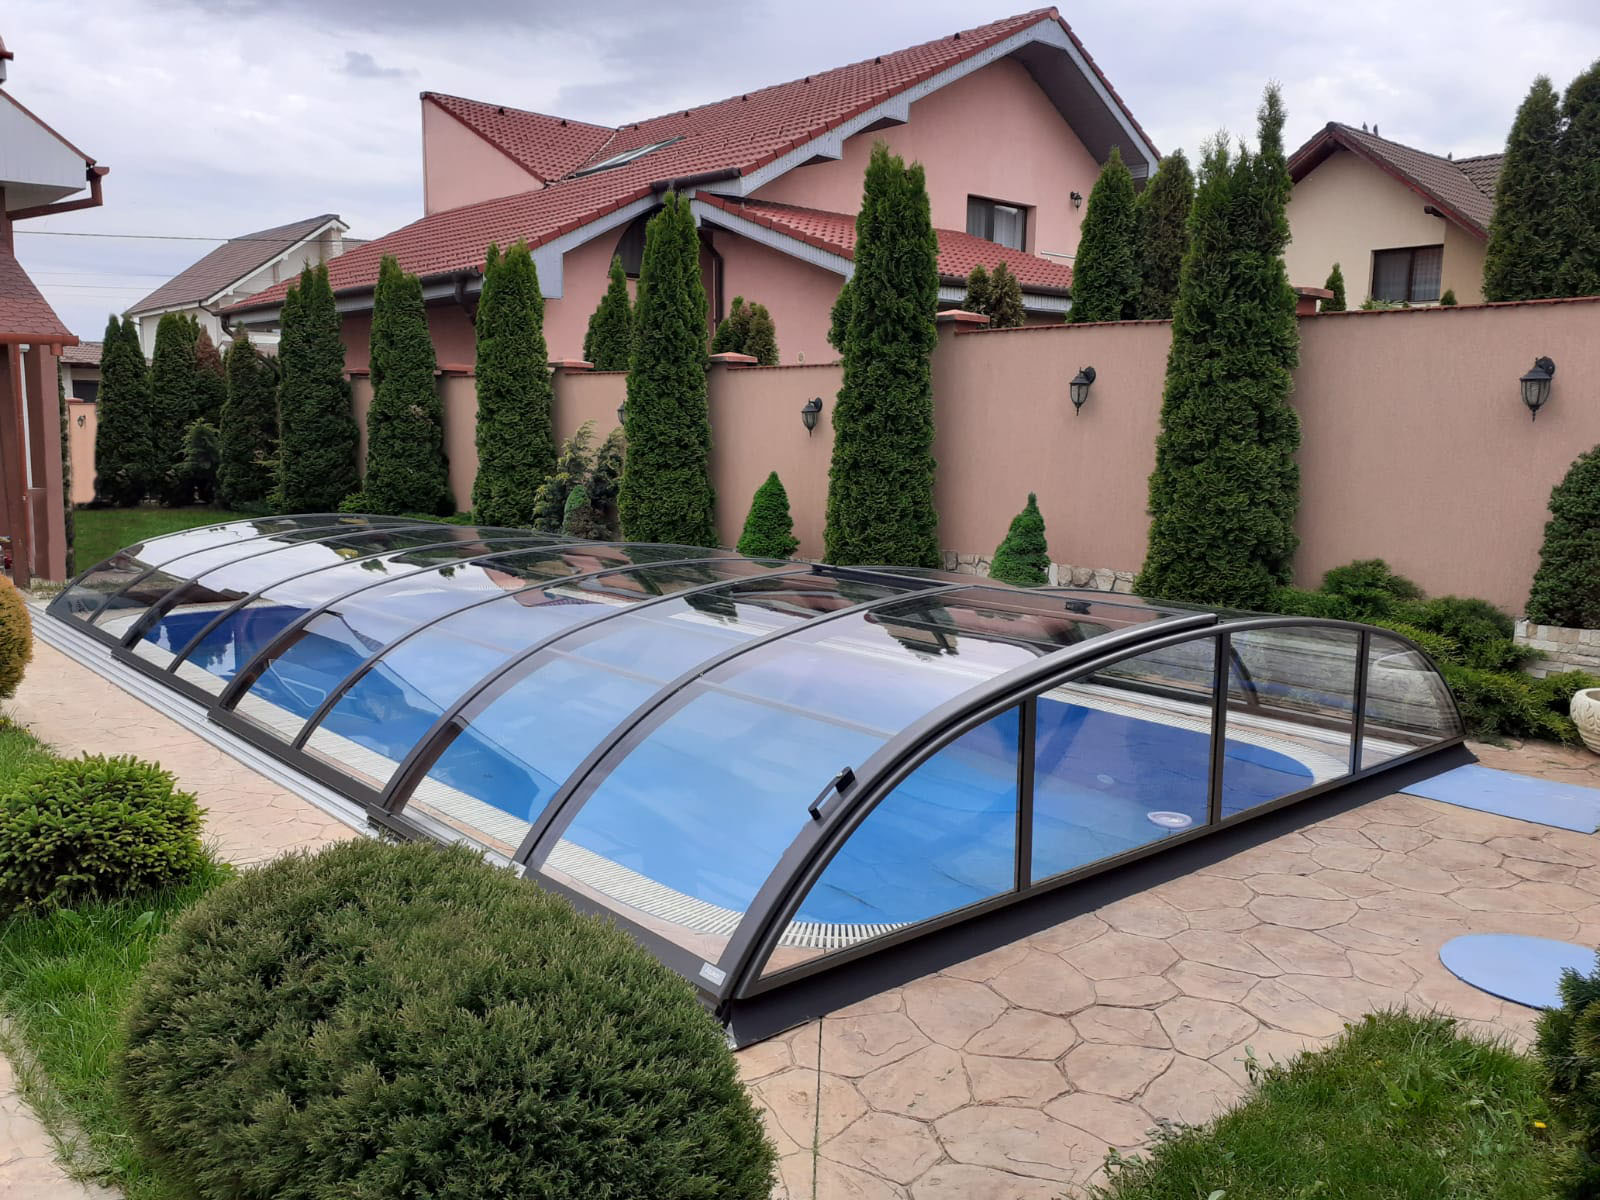 Poolüberdachung Azure Flat Compact 8,63 x 5,07 x 0,90 m Anthrazit Bausatz Selbstmontage Einstieg links